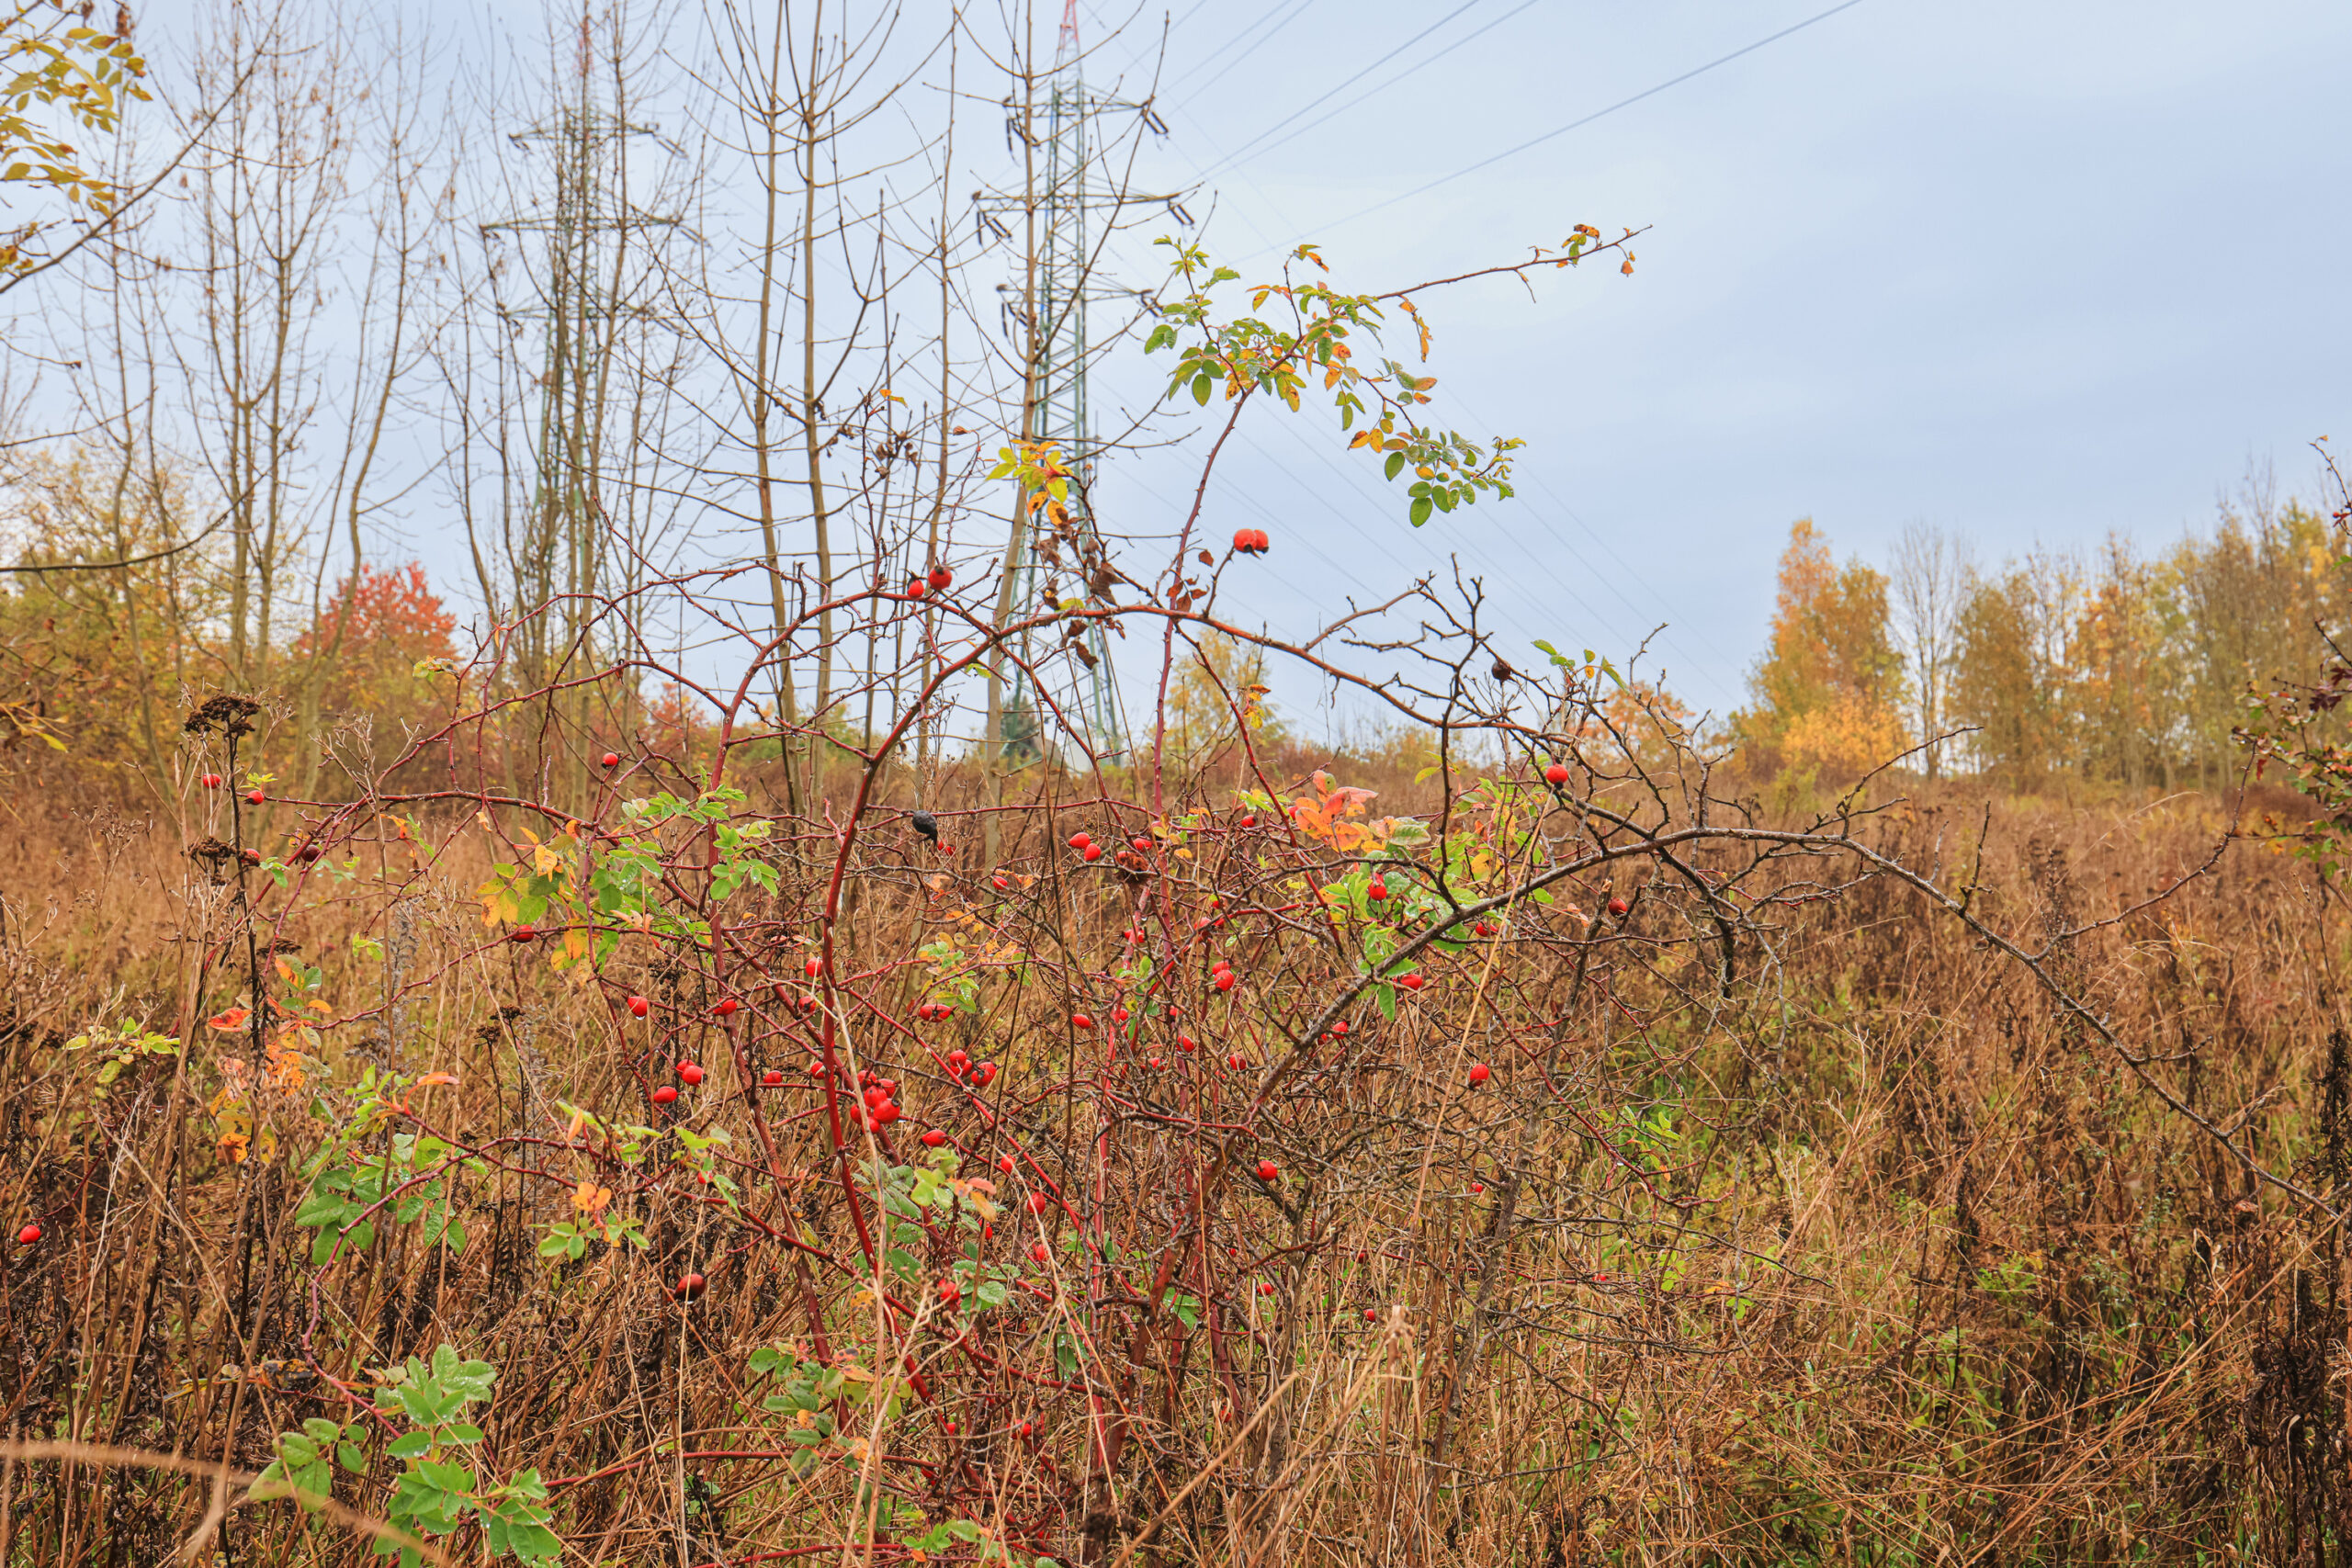 <h1>Vrch Mikulka – růže šípková</h1><br />
Ve střední části menší šípkový keř se zralými šípky a zbytky olistění, okolo neudržovaný porost. Podzimní výjev.